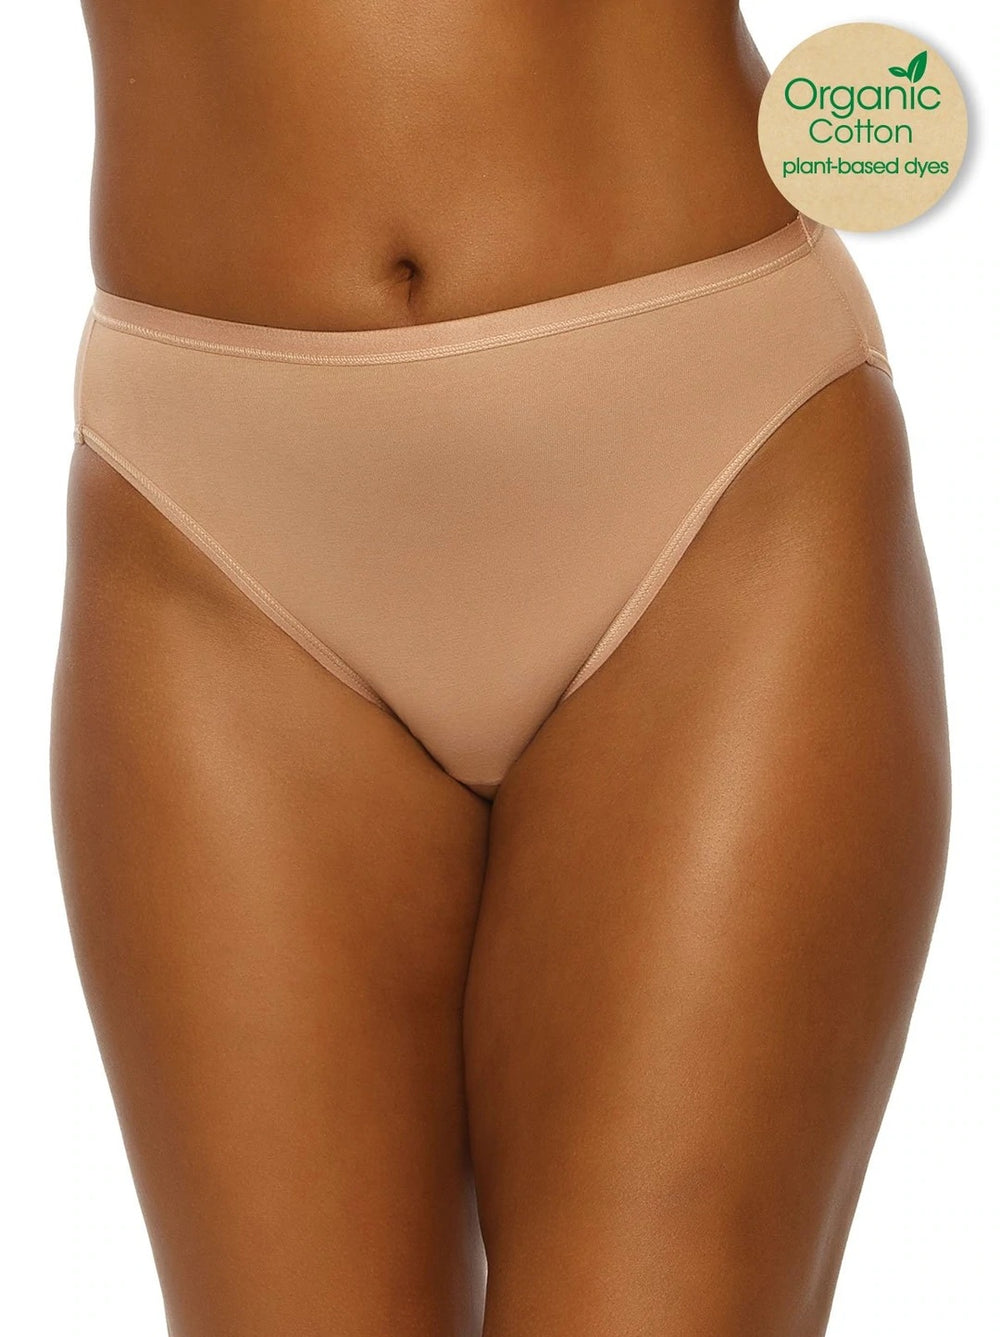 Underwear Day - Here are the best plus-size undies - TheCurvyMagazine